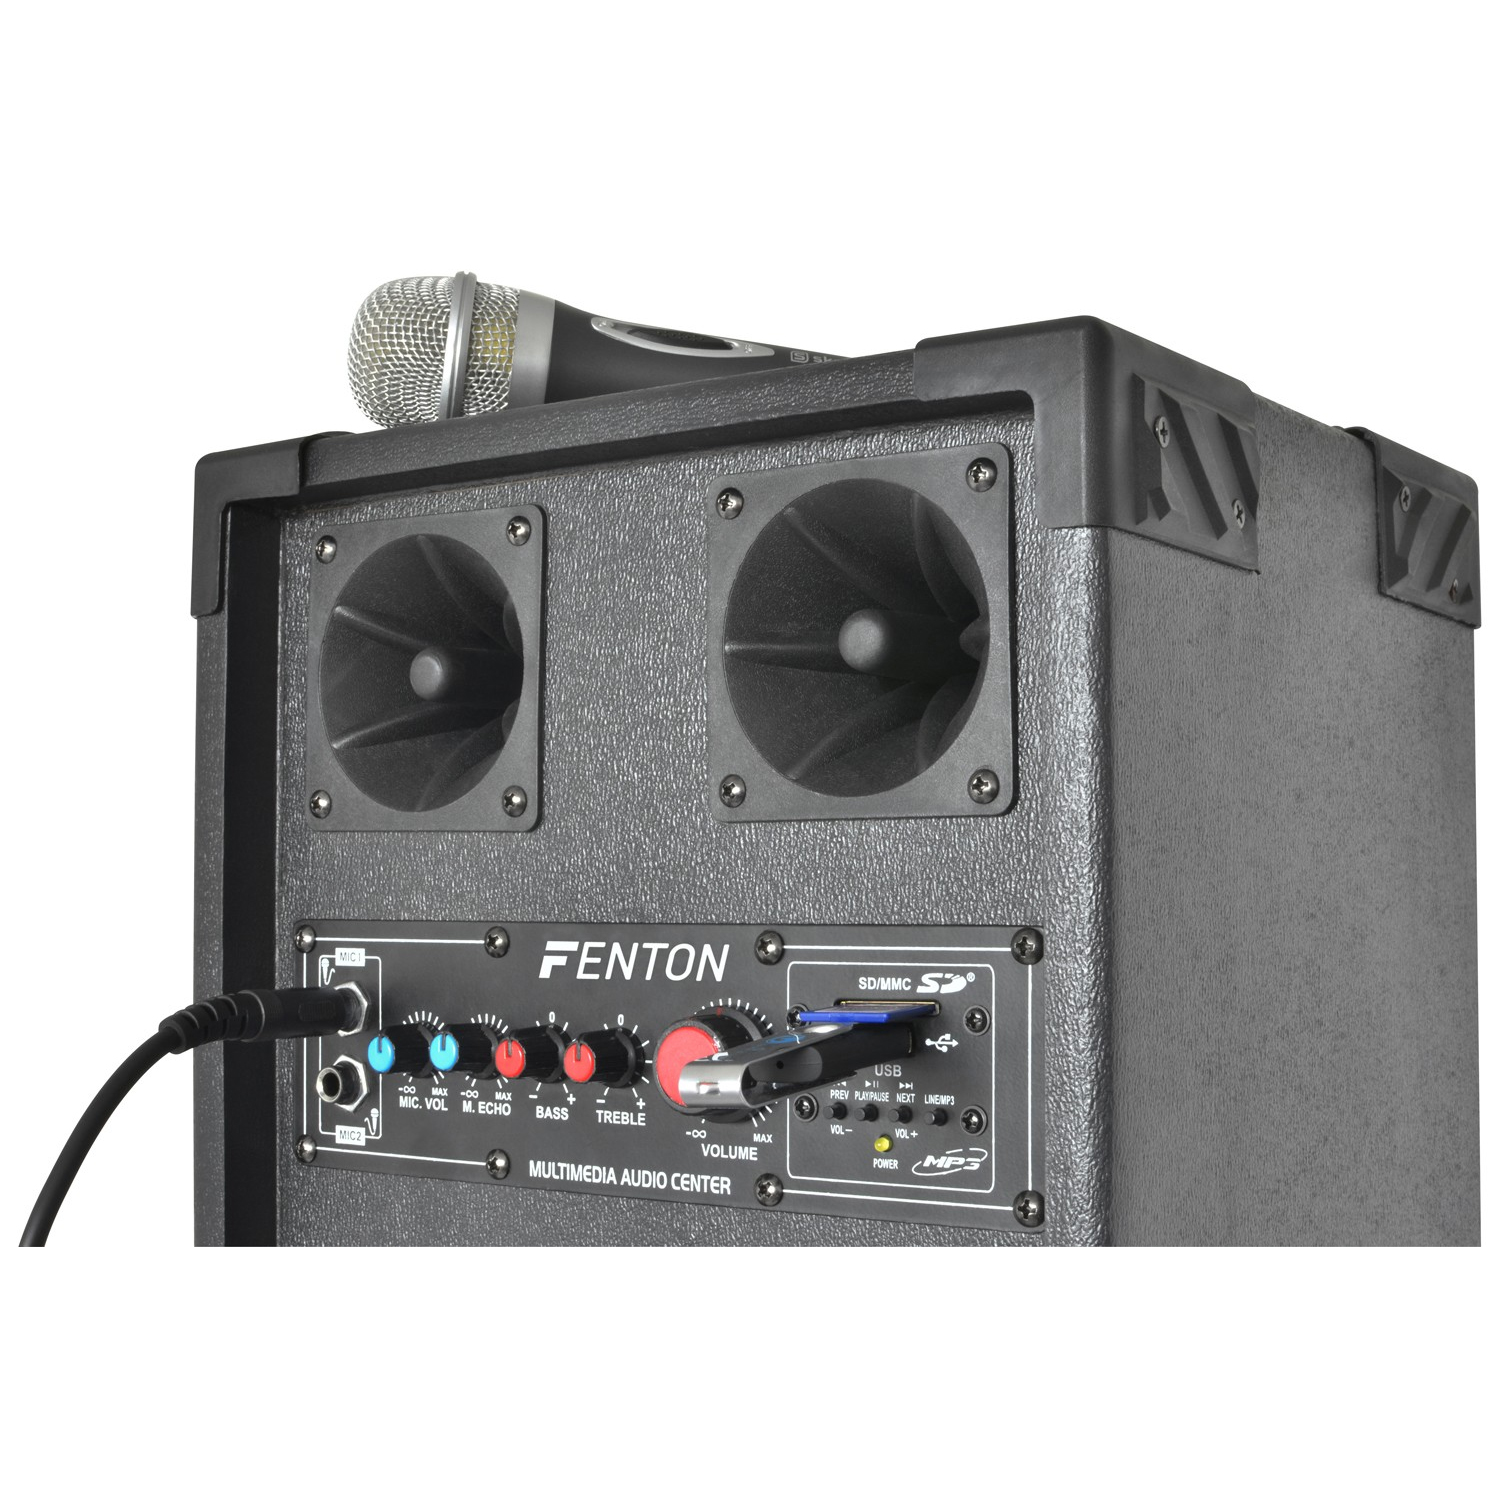 FENTON SPB-210 PA Σετ Αυτοενισχυόμενο+παθητικό 2x10" 2 x 300 Watt MAX MP3, USB, SD, Bluetooth (ζεύγος) 178.448